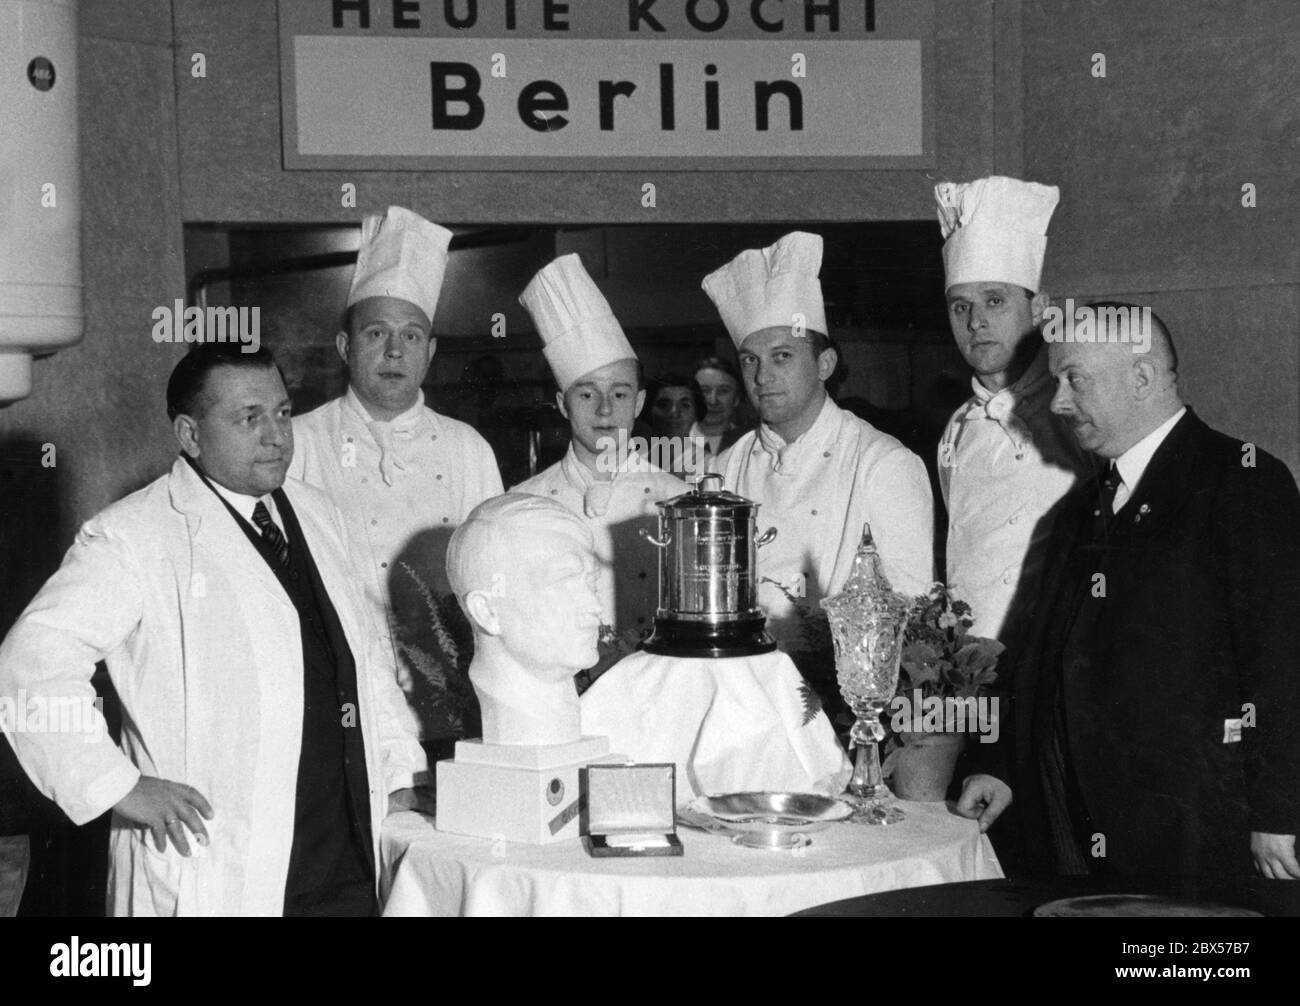 Il team di chef di Berlino ha vinto il "Golden Marmite" alla 7° Mostra Internazionale di Arte culinaria. Il capo chef ha un distintivo di partito del NSDAP e sul tavolo c'è una testa Hitler in porcellana. Sulla foto da sinistra: Kurt Villbrandt, Peter Saueressig, Paul Oechsler (Eden-Hotel), Wilhelm Rueb (Pauquet), Kurt Moritz (Kaiserhof), Grueger (Gaufachgruppenwalter). Foto Stock